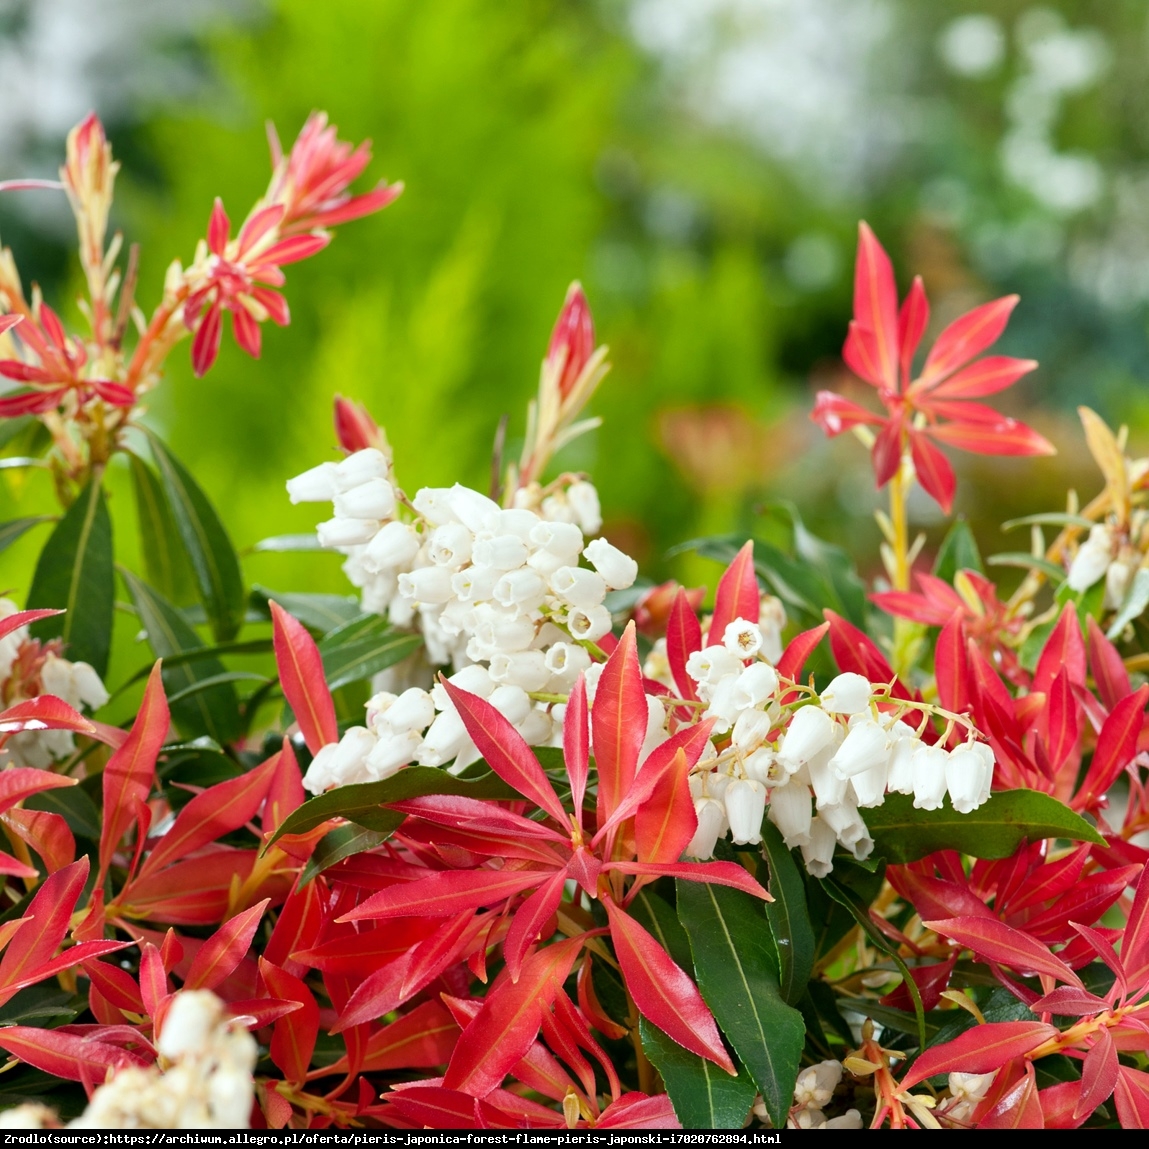 pieris japonica forest flame plant shrub evergreen 9cm garden pot pots pack enlarge flowers